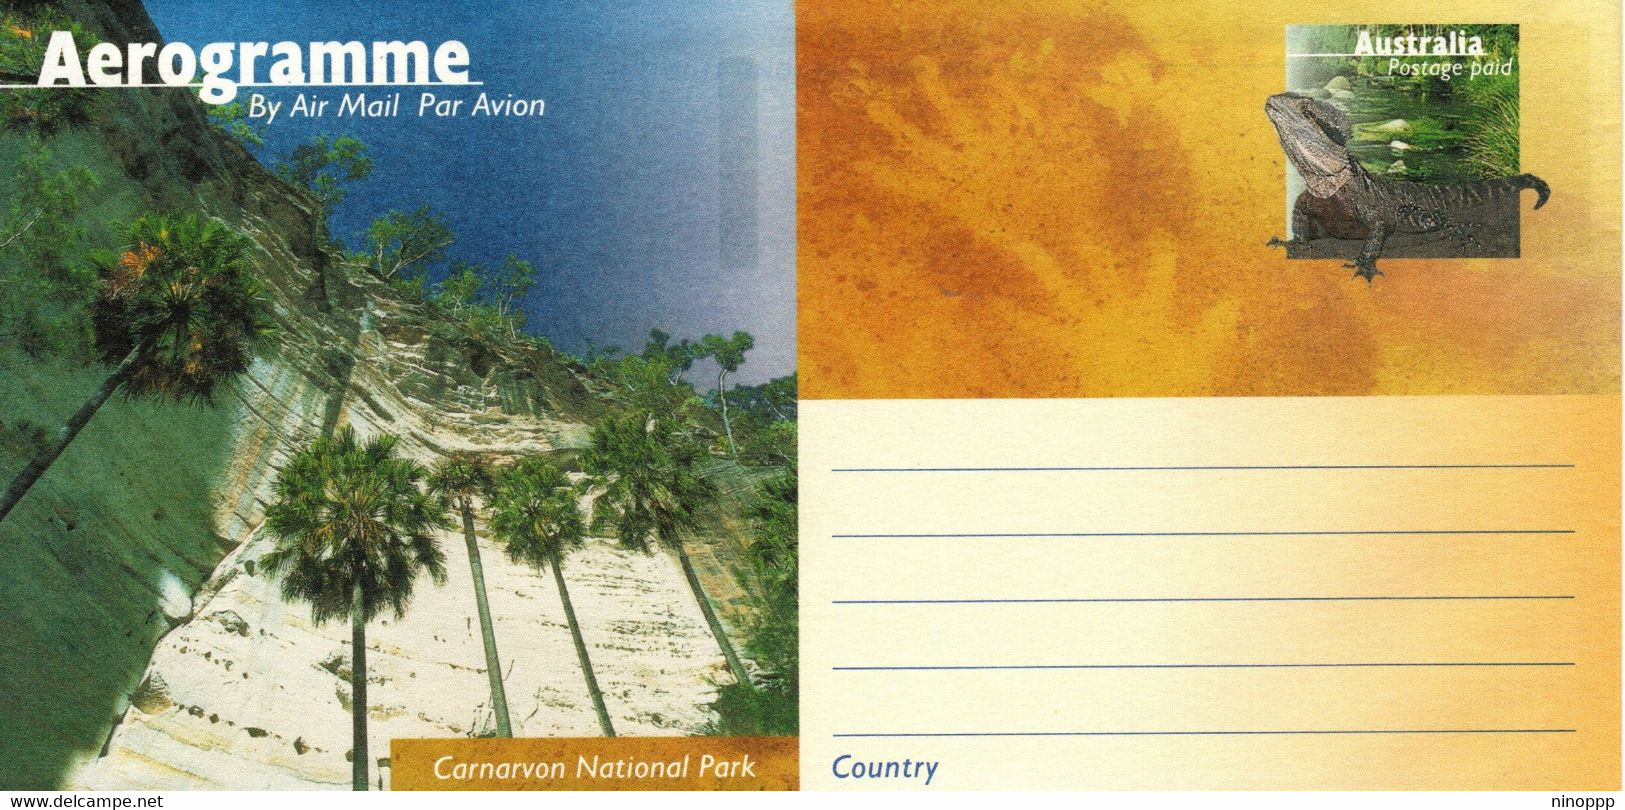 Australia ASC A128 1997 National Parks,Carnavon, Mint Aerogramme - Aerogramme